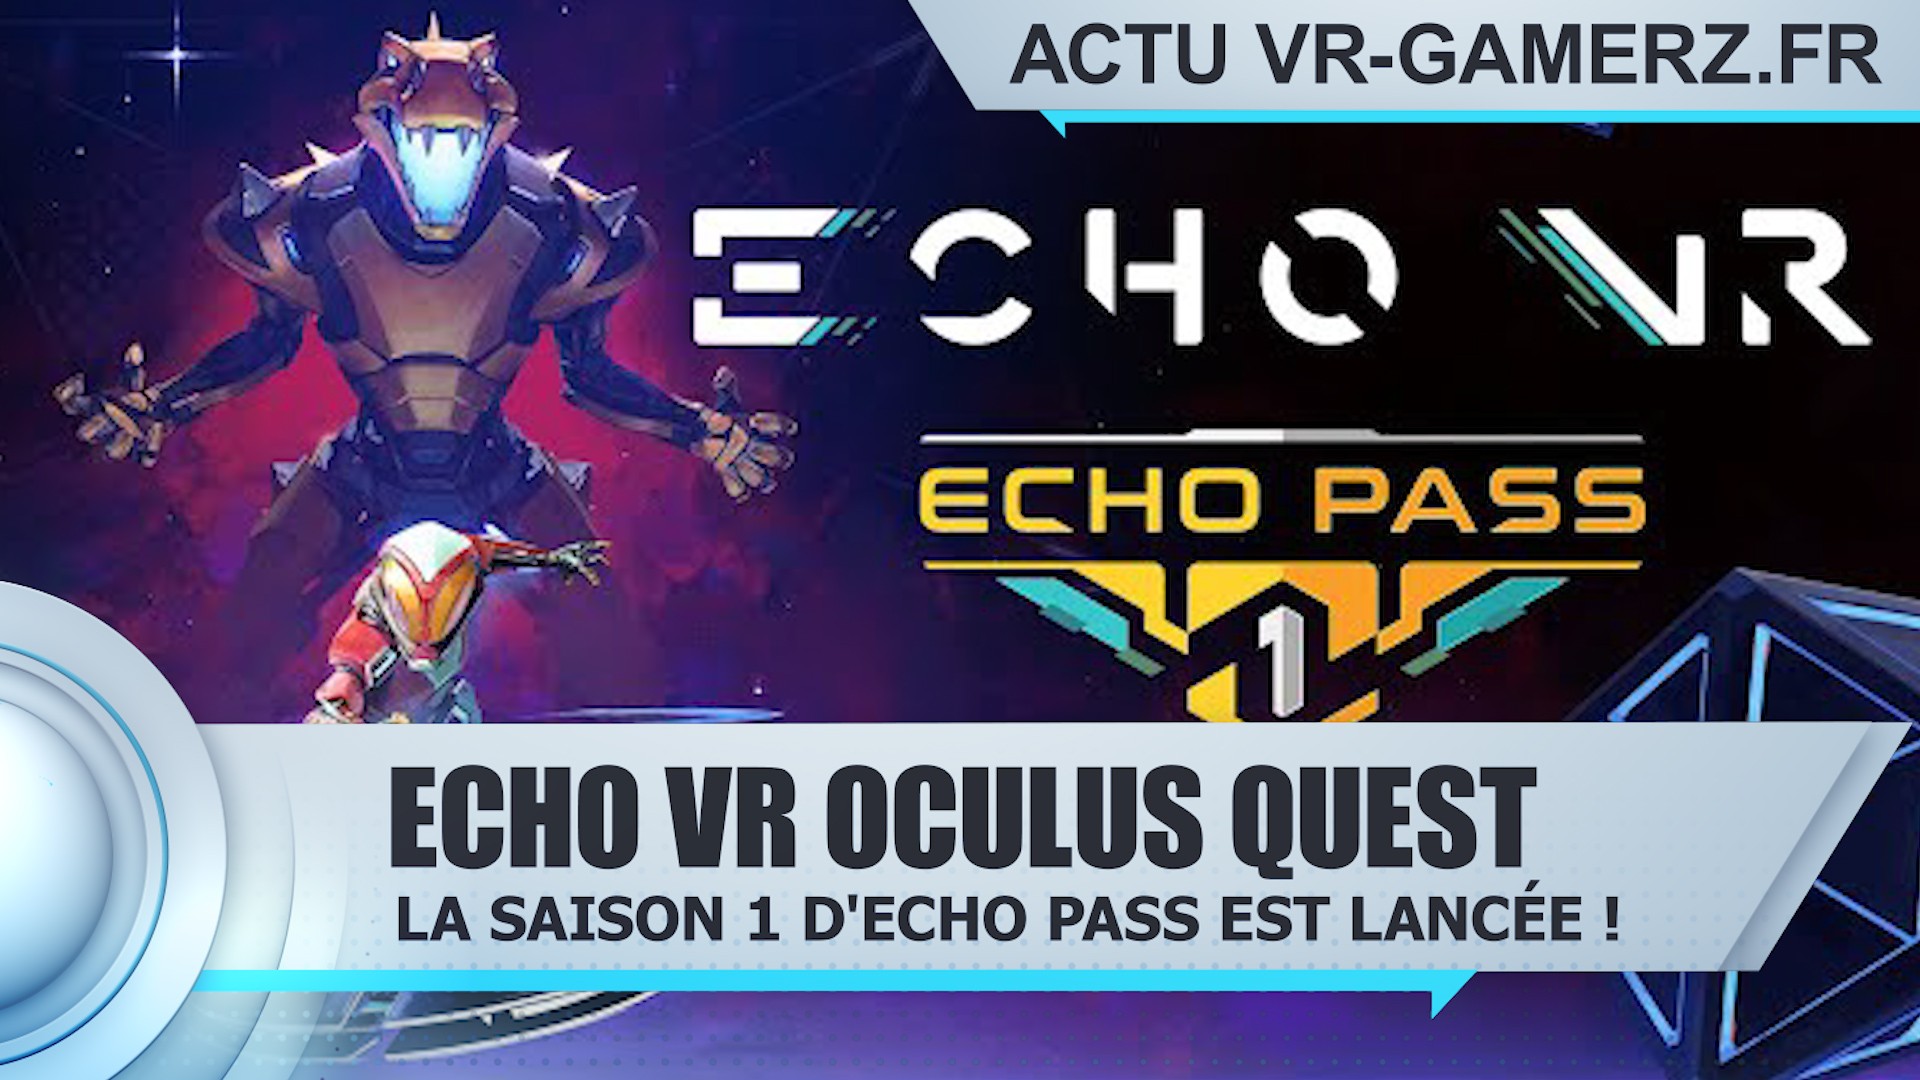 Lancement de la Saison 1 d’Echo Pass pour Echo VR !